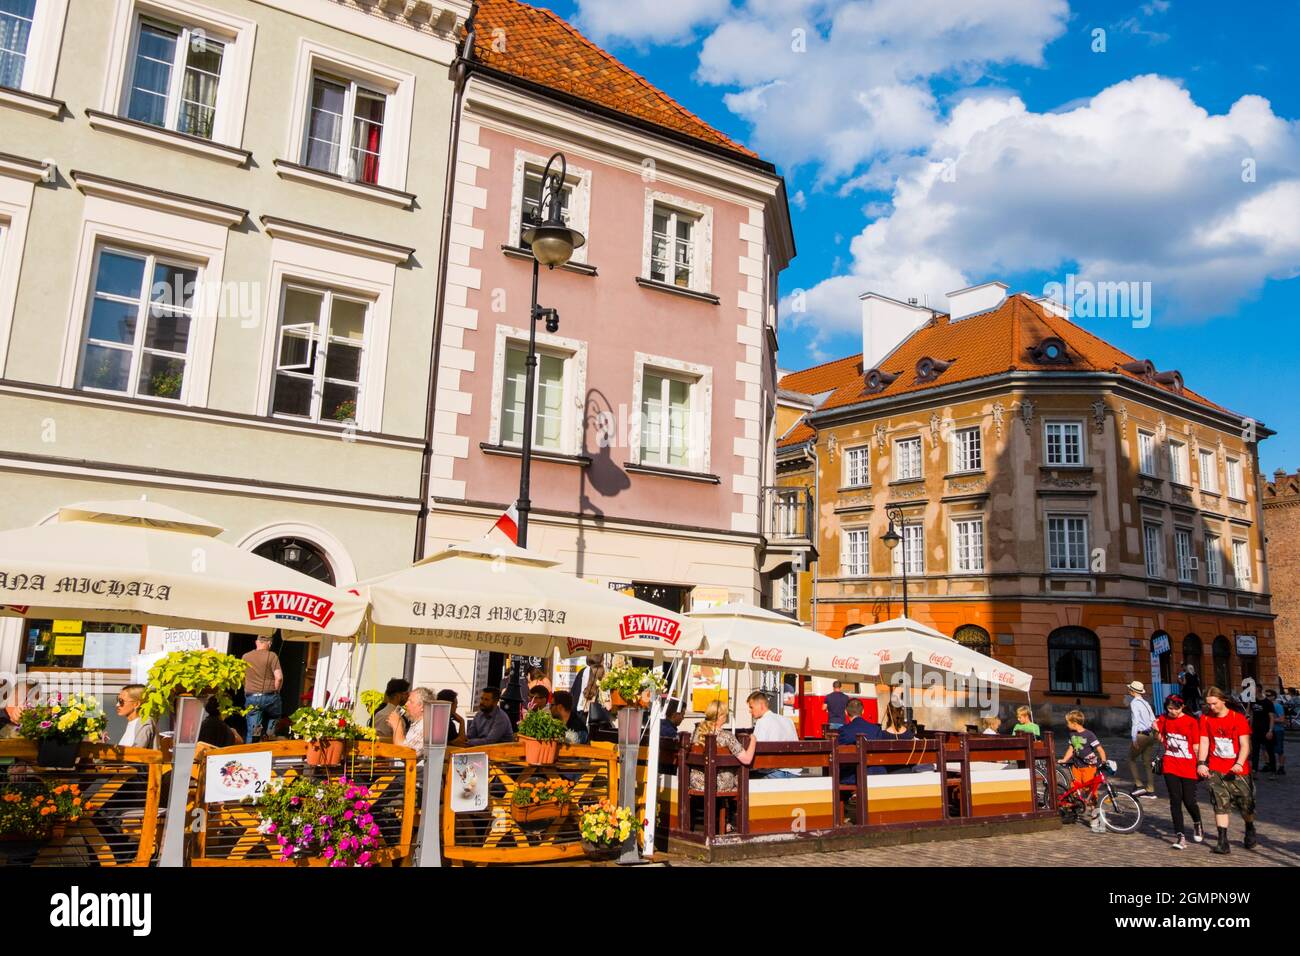 Freta street, Nowe Miasto, new town, Warsaw, Poland Stock Photo